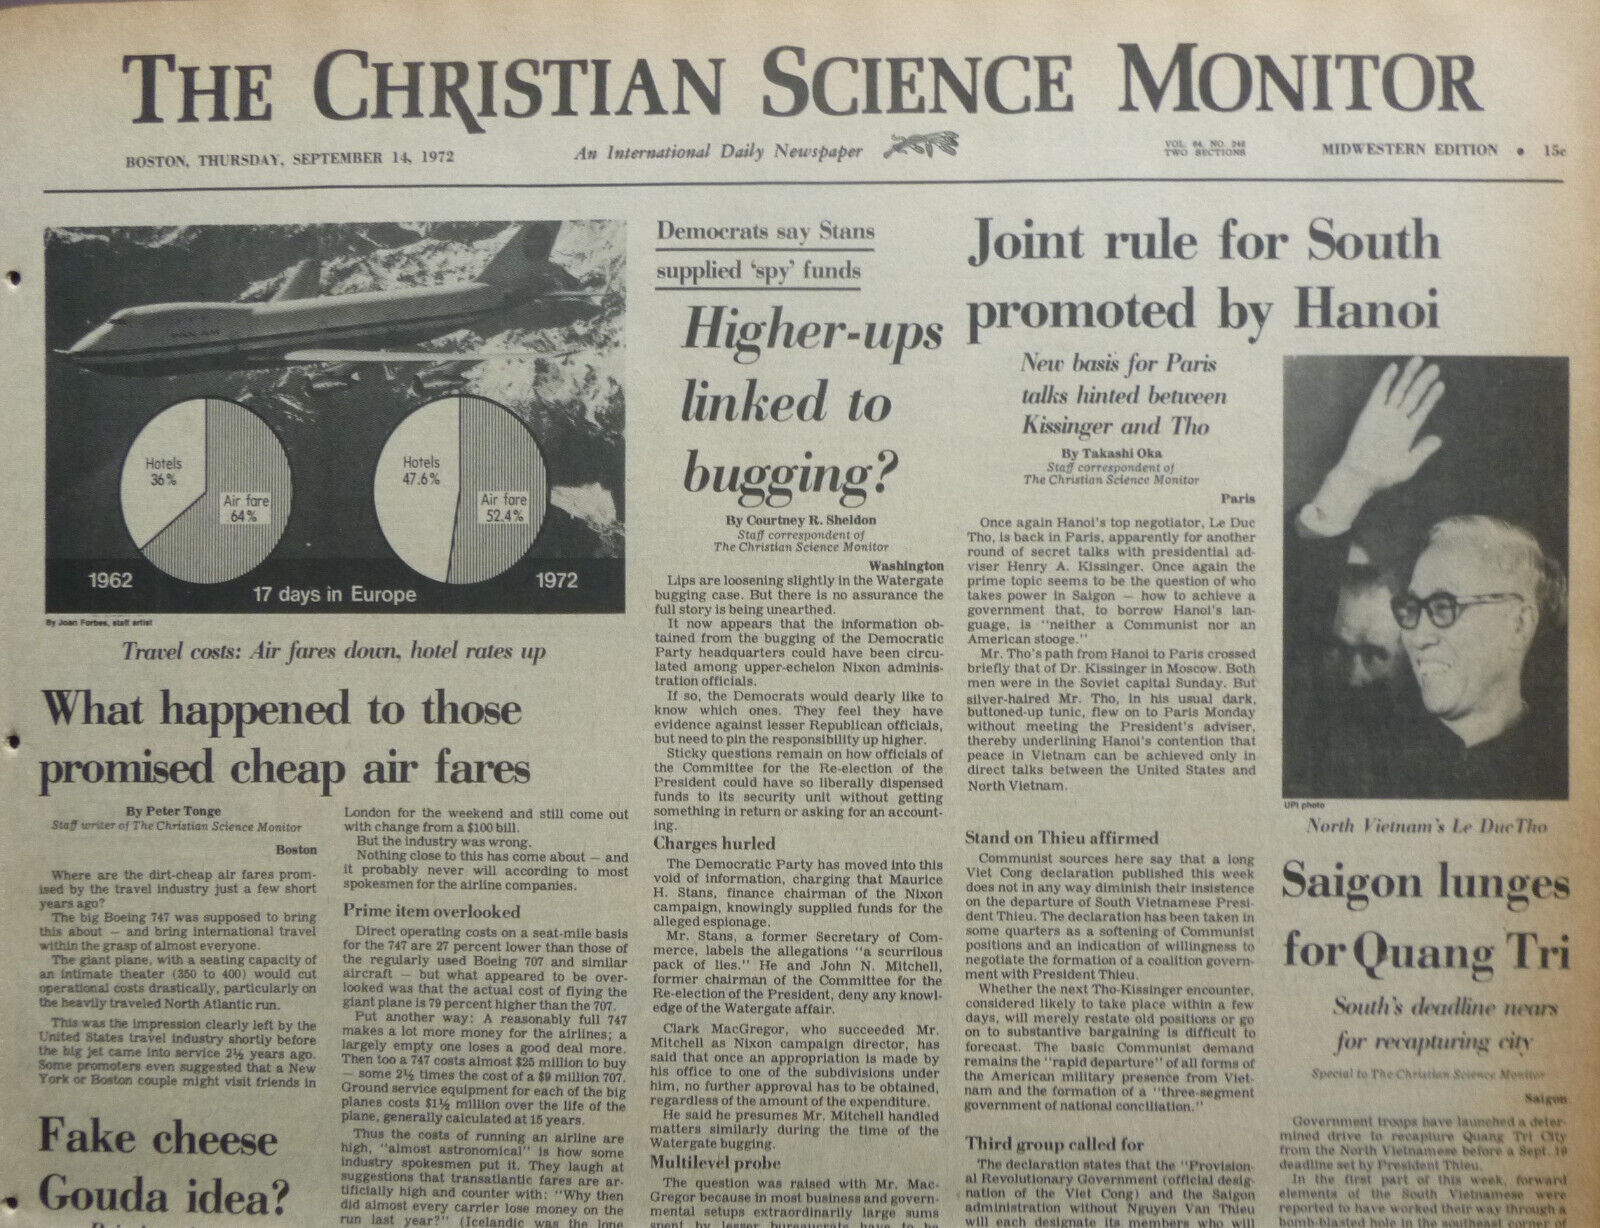 ULSTER PEACE SHRINKS HANOI SAIGON - September 14, 1972 Int Newspaper C S Monitor